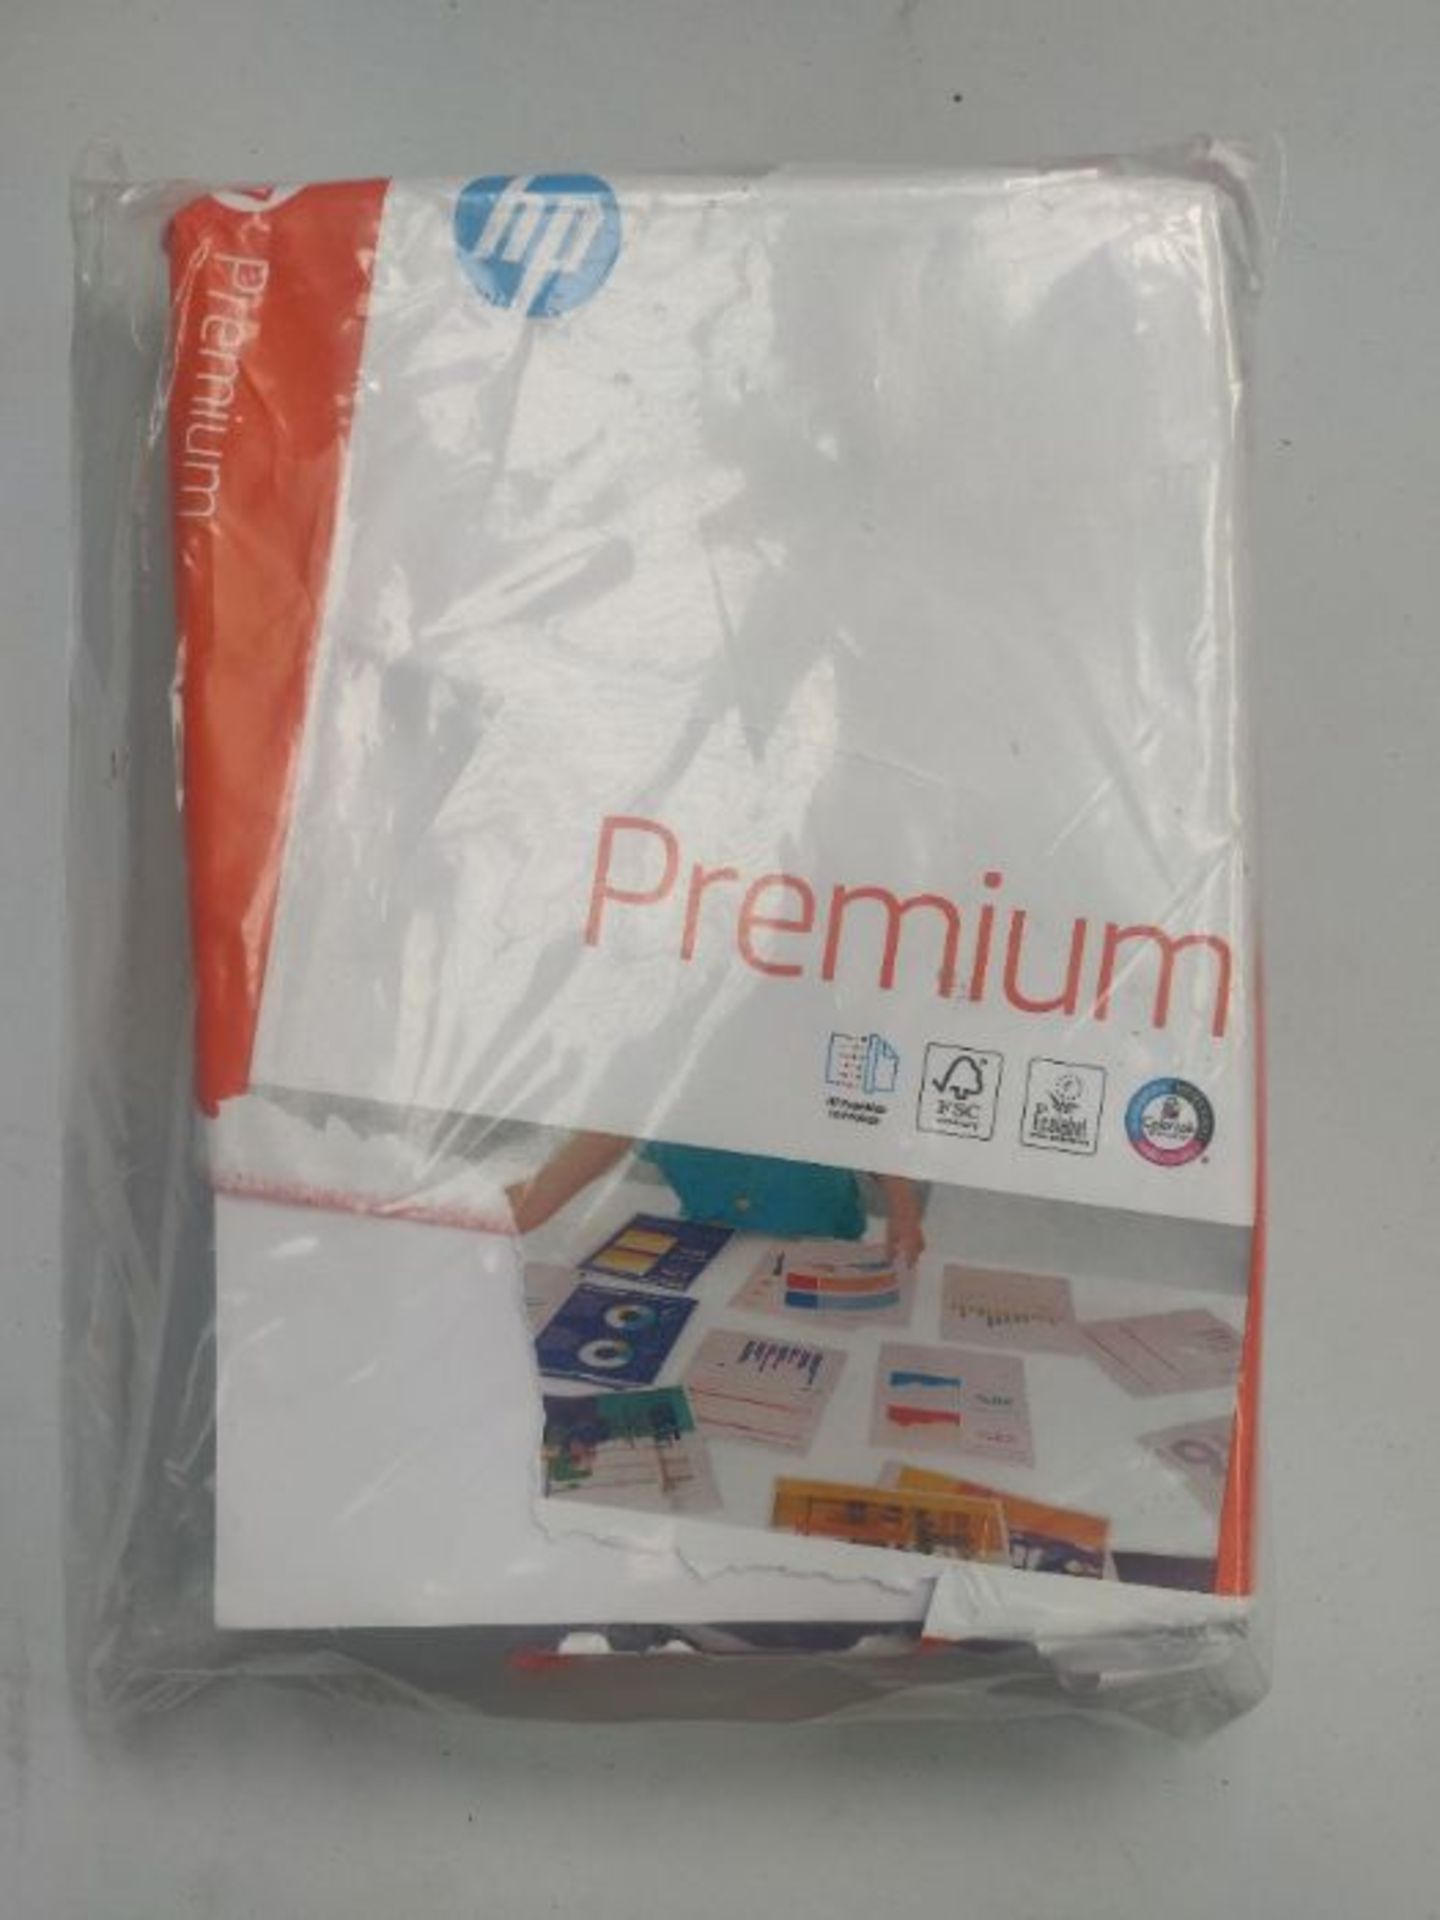 HP Printer Paper, Premium A4 Paper, 210x297mm, 80gsm, 1 Ream, 500 Sheets - FSC Certifi - Image 2 of 2